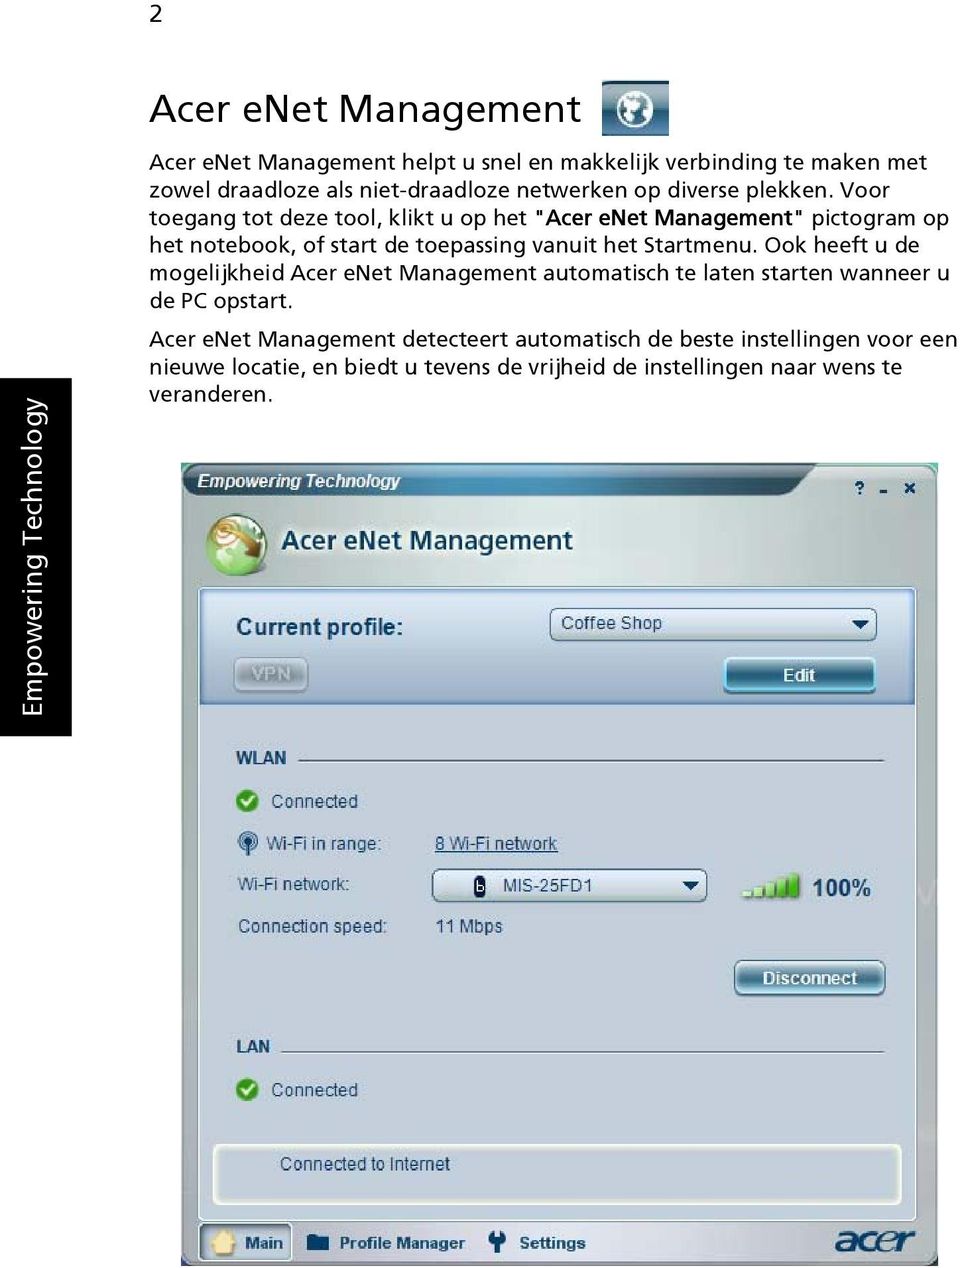 Voor toegang tot deze tool, klikt u op het "Acer enet Management" pictogram op het notebook, of start de toepassing vanuit het Startmenu.